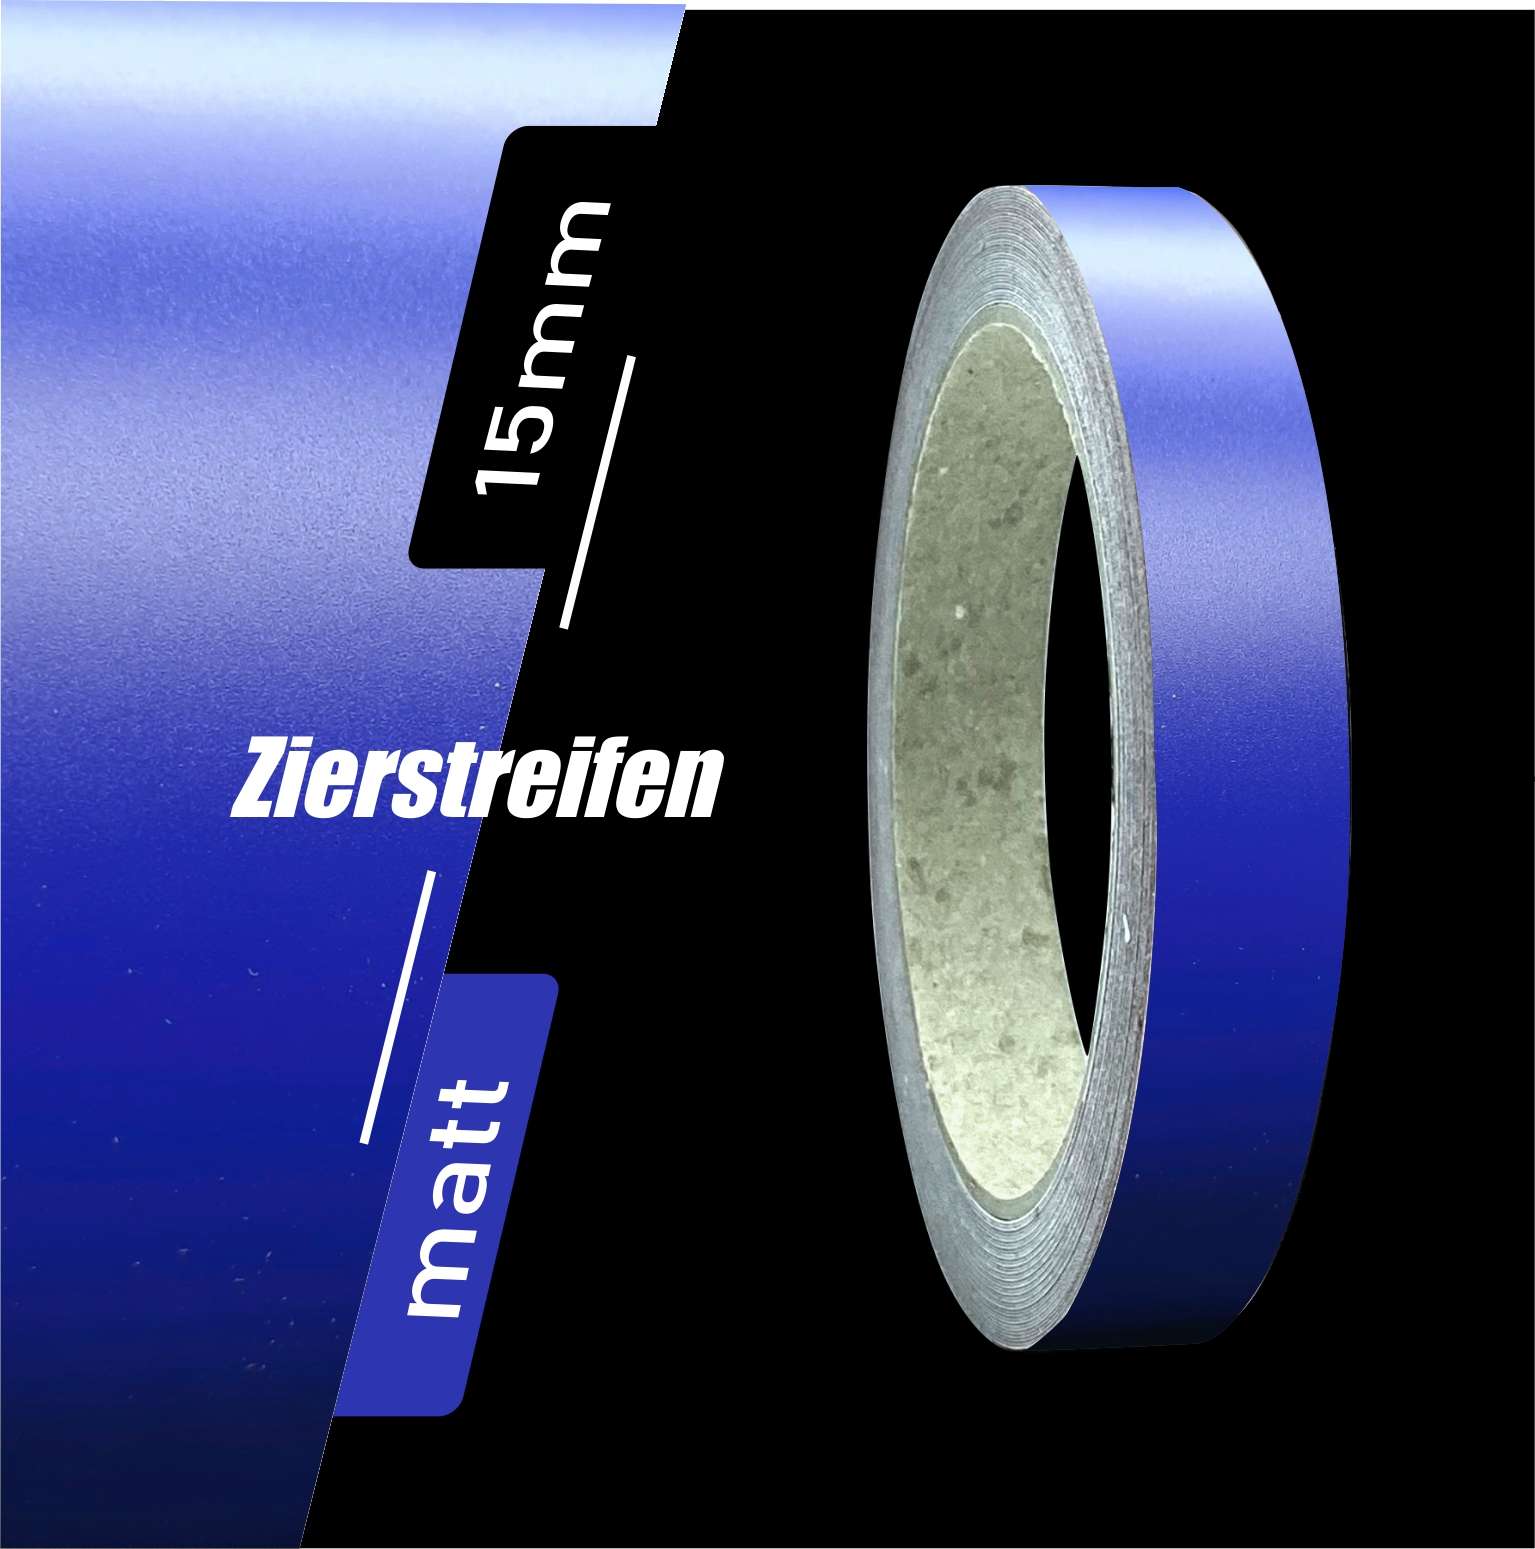 siviwonder Zierstreifen blau metallic matt in 15 mm Breite und 10 m Länge  für Auto Boot Jetski Modellbau Klebeband Aufkleber Folie Dekorstreifen